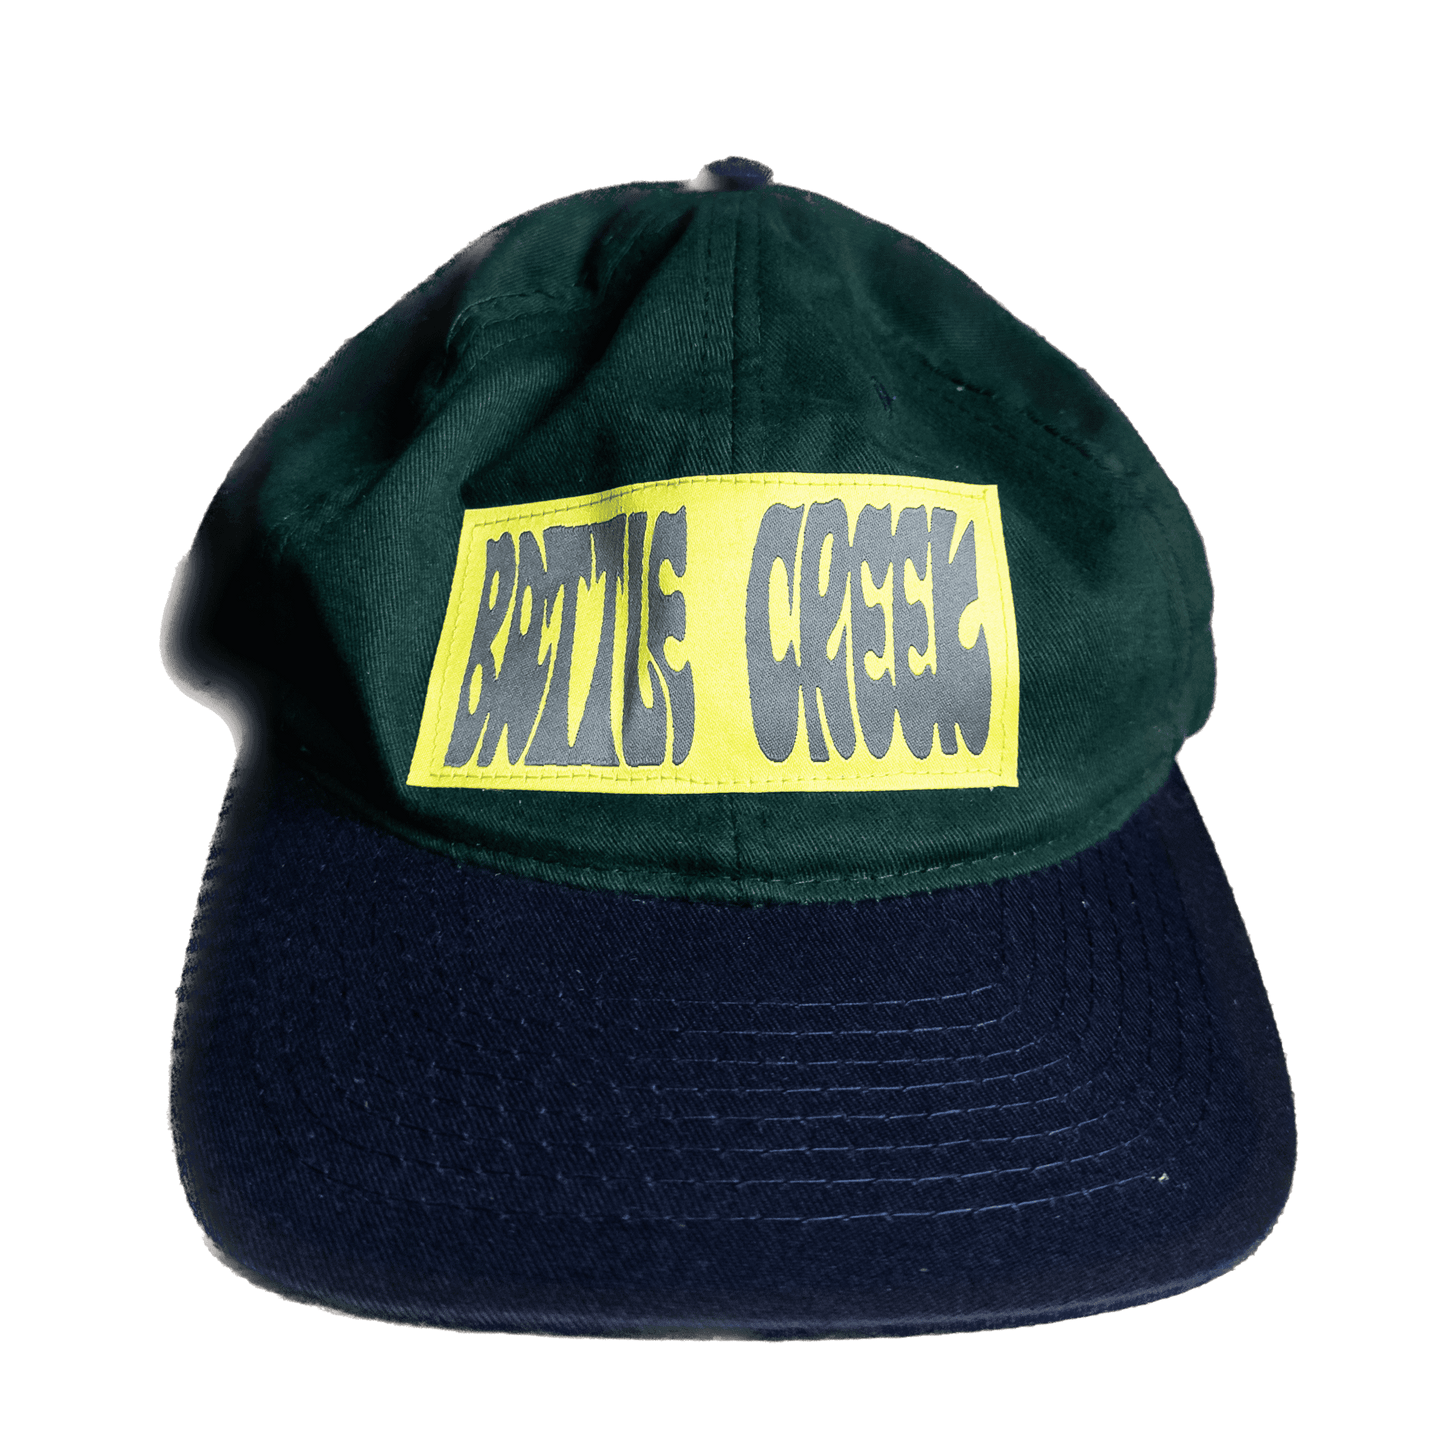 Zip Code Hats